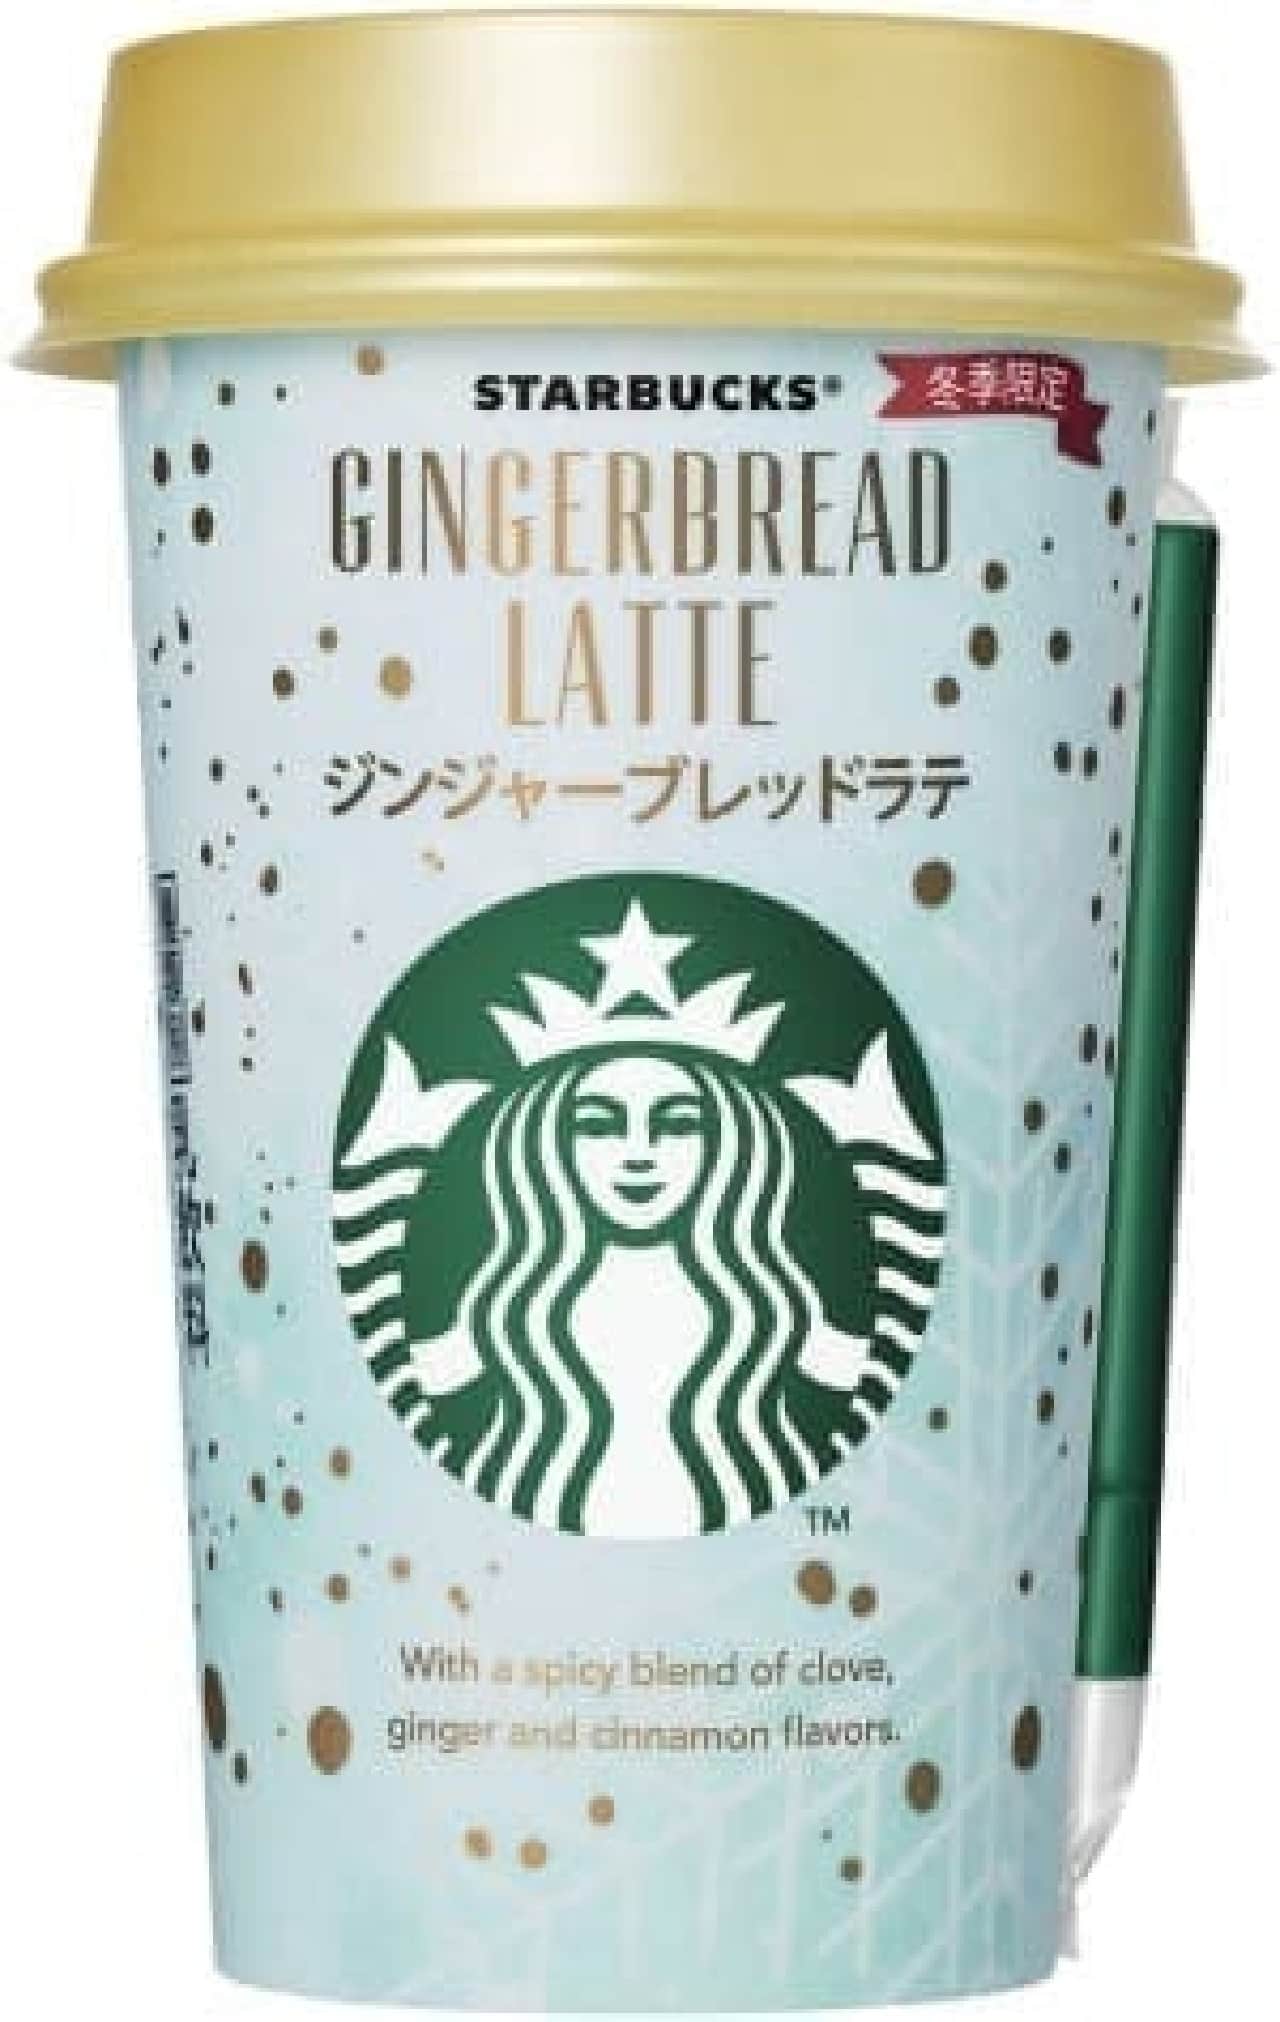 Suntory "Starbucks Gingerbread Latte"